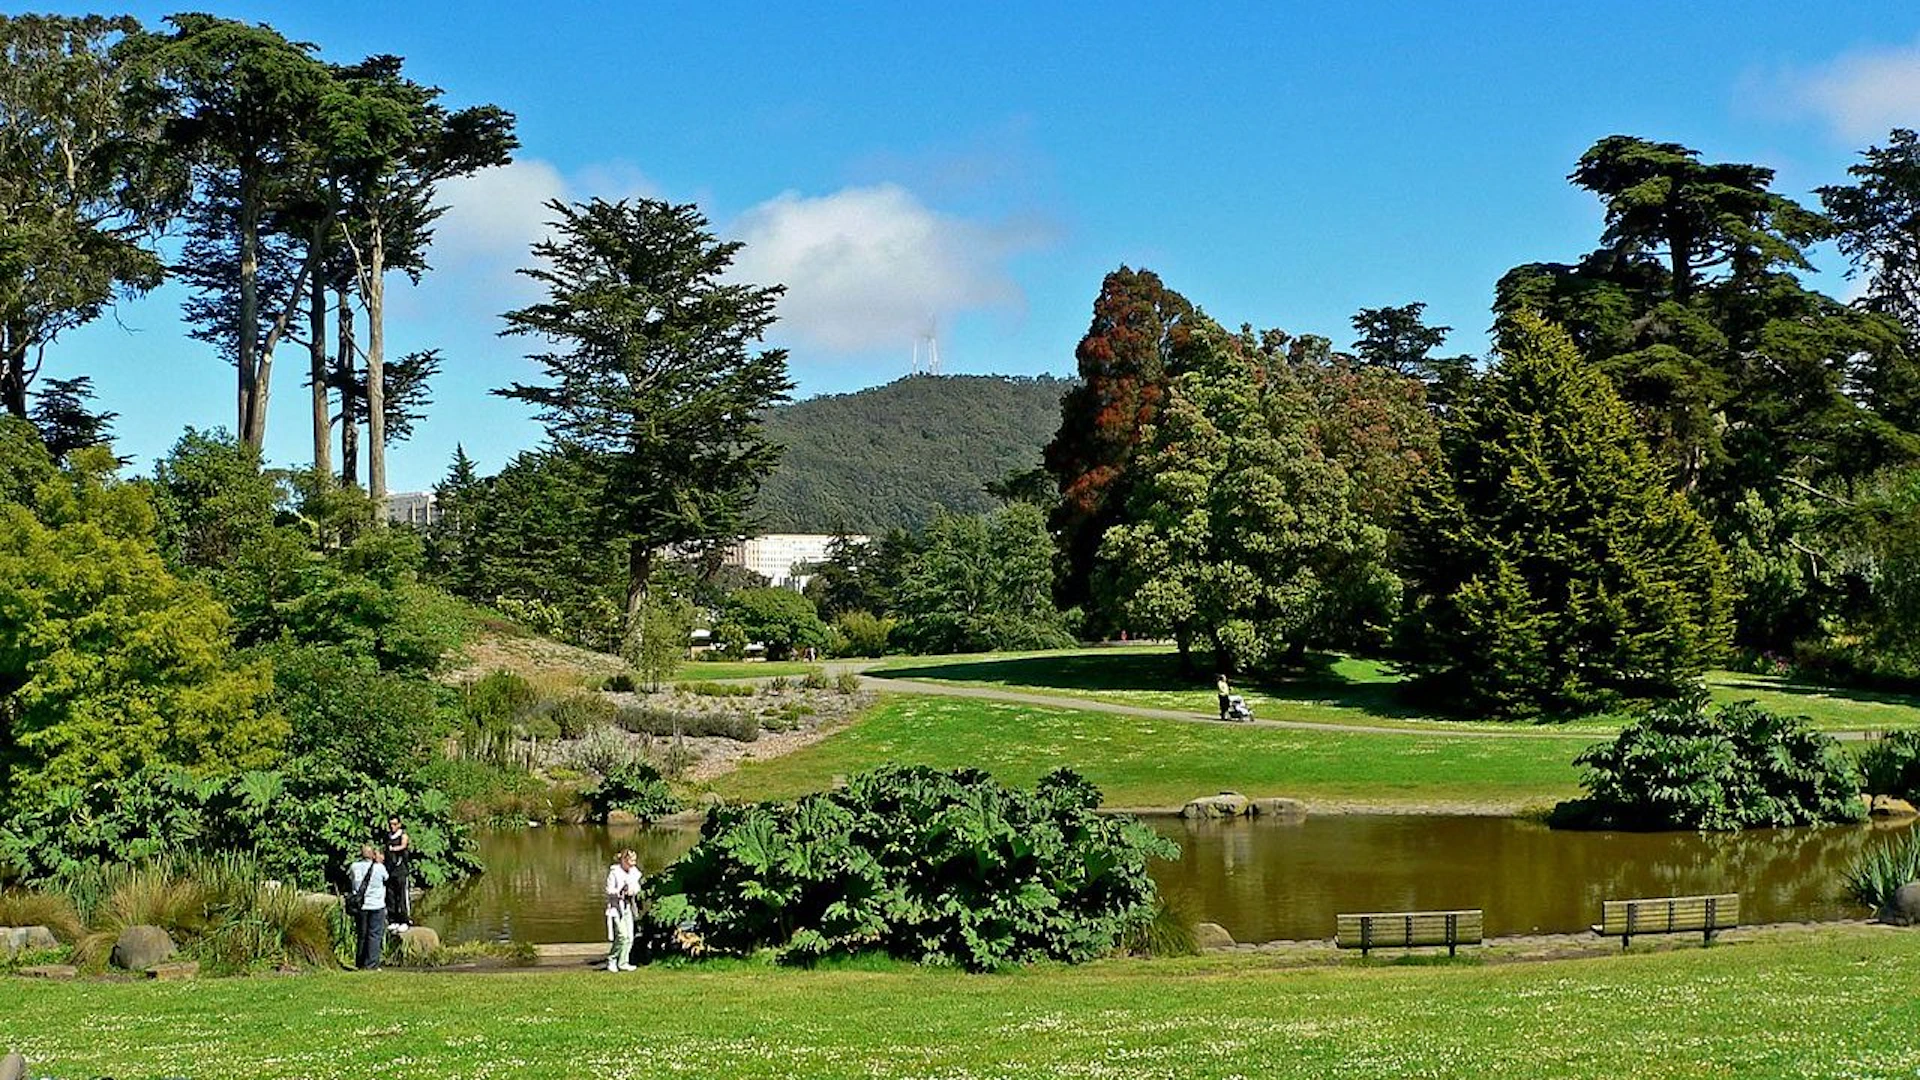 SF Botanical Garden